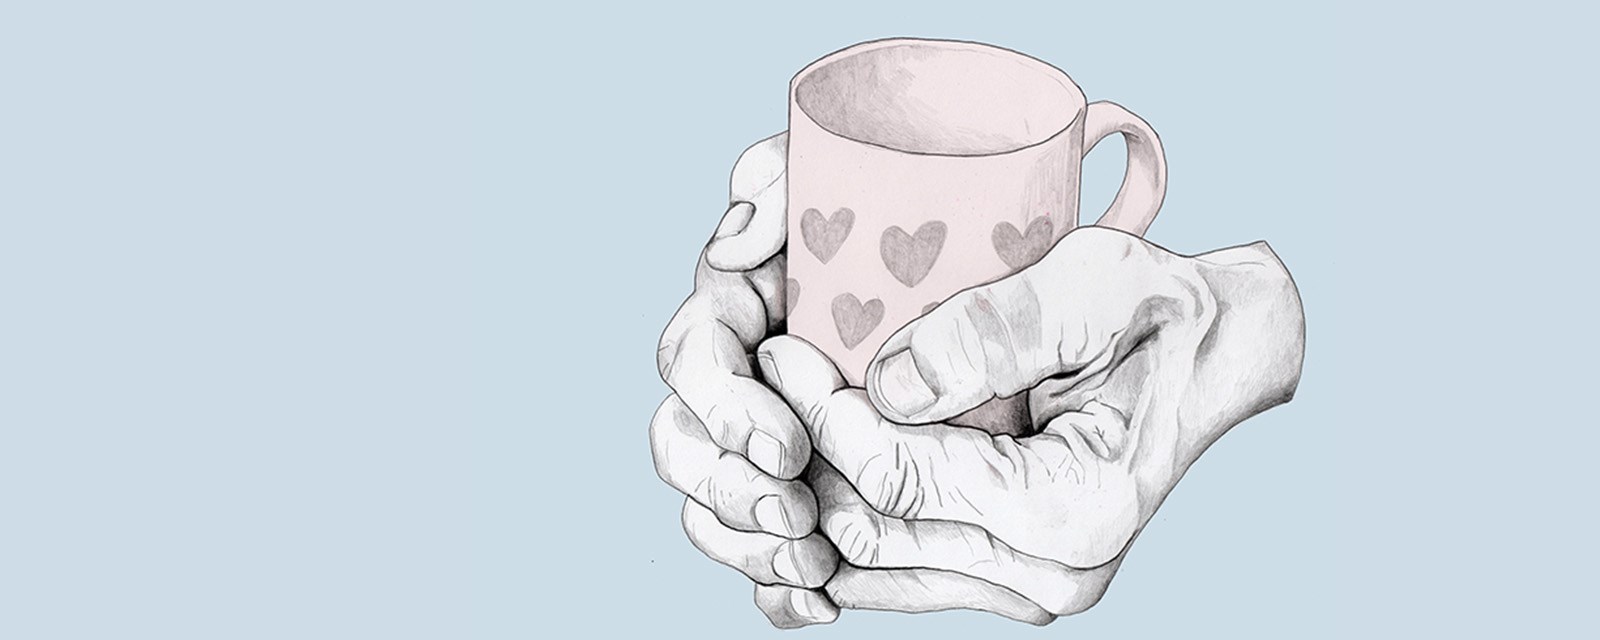 Gamle hender holder rundt en kaffekopp, varmer seg på koppen. 